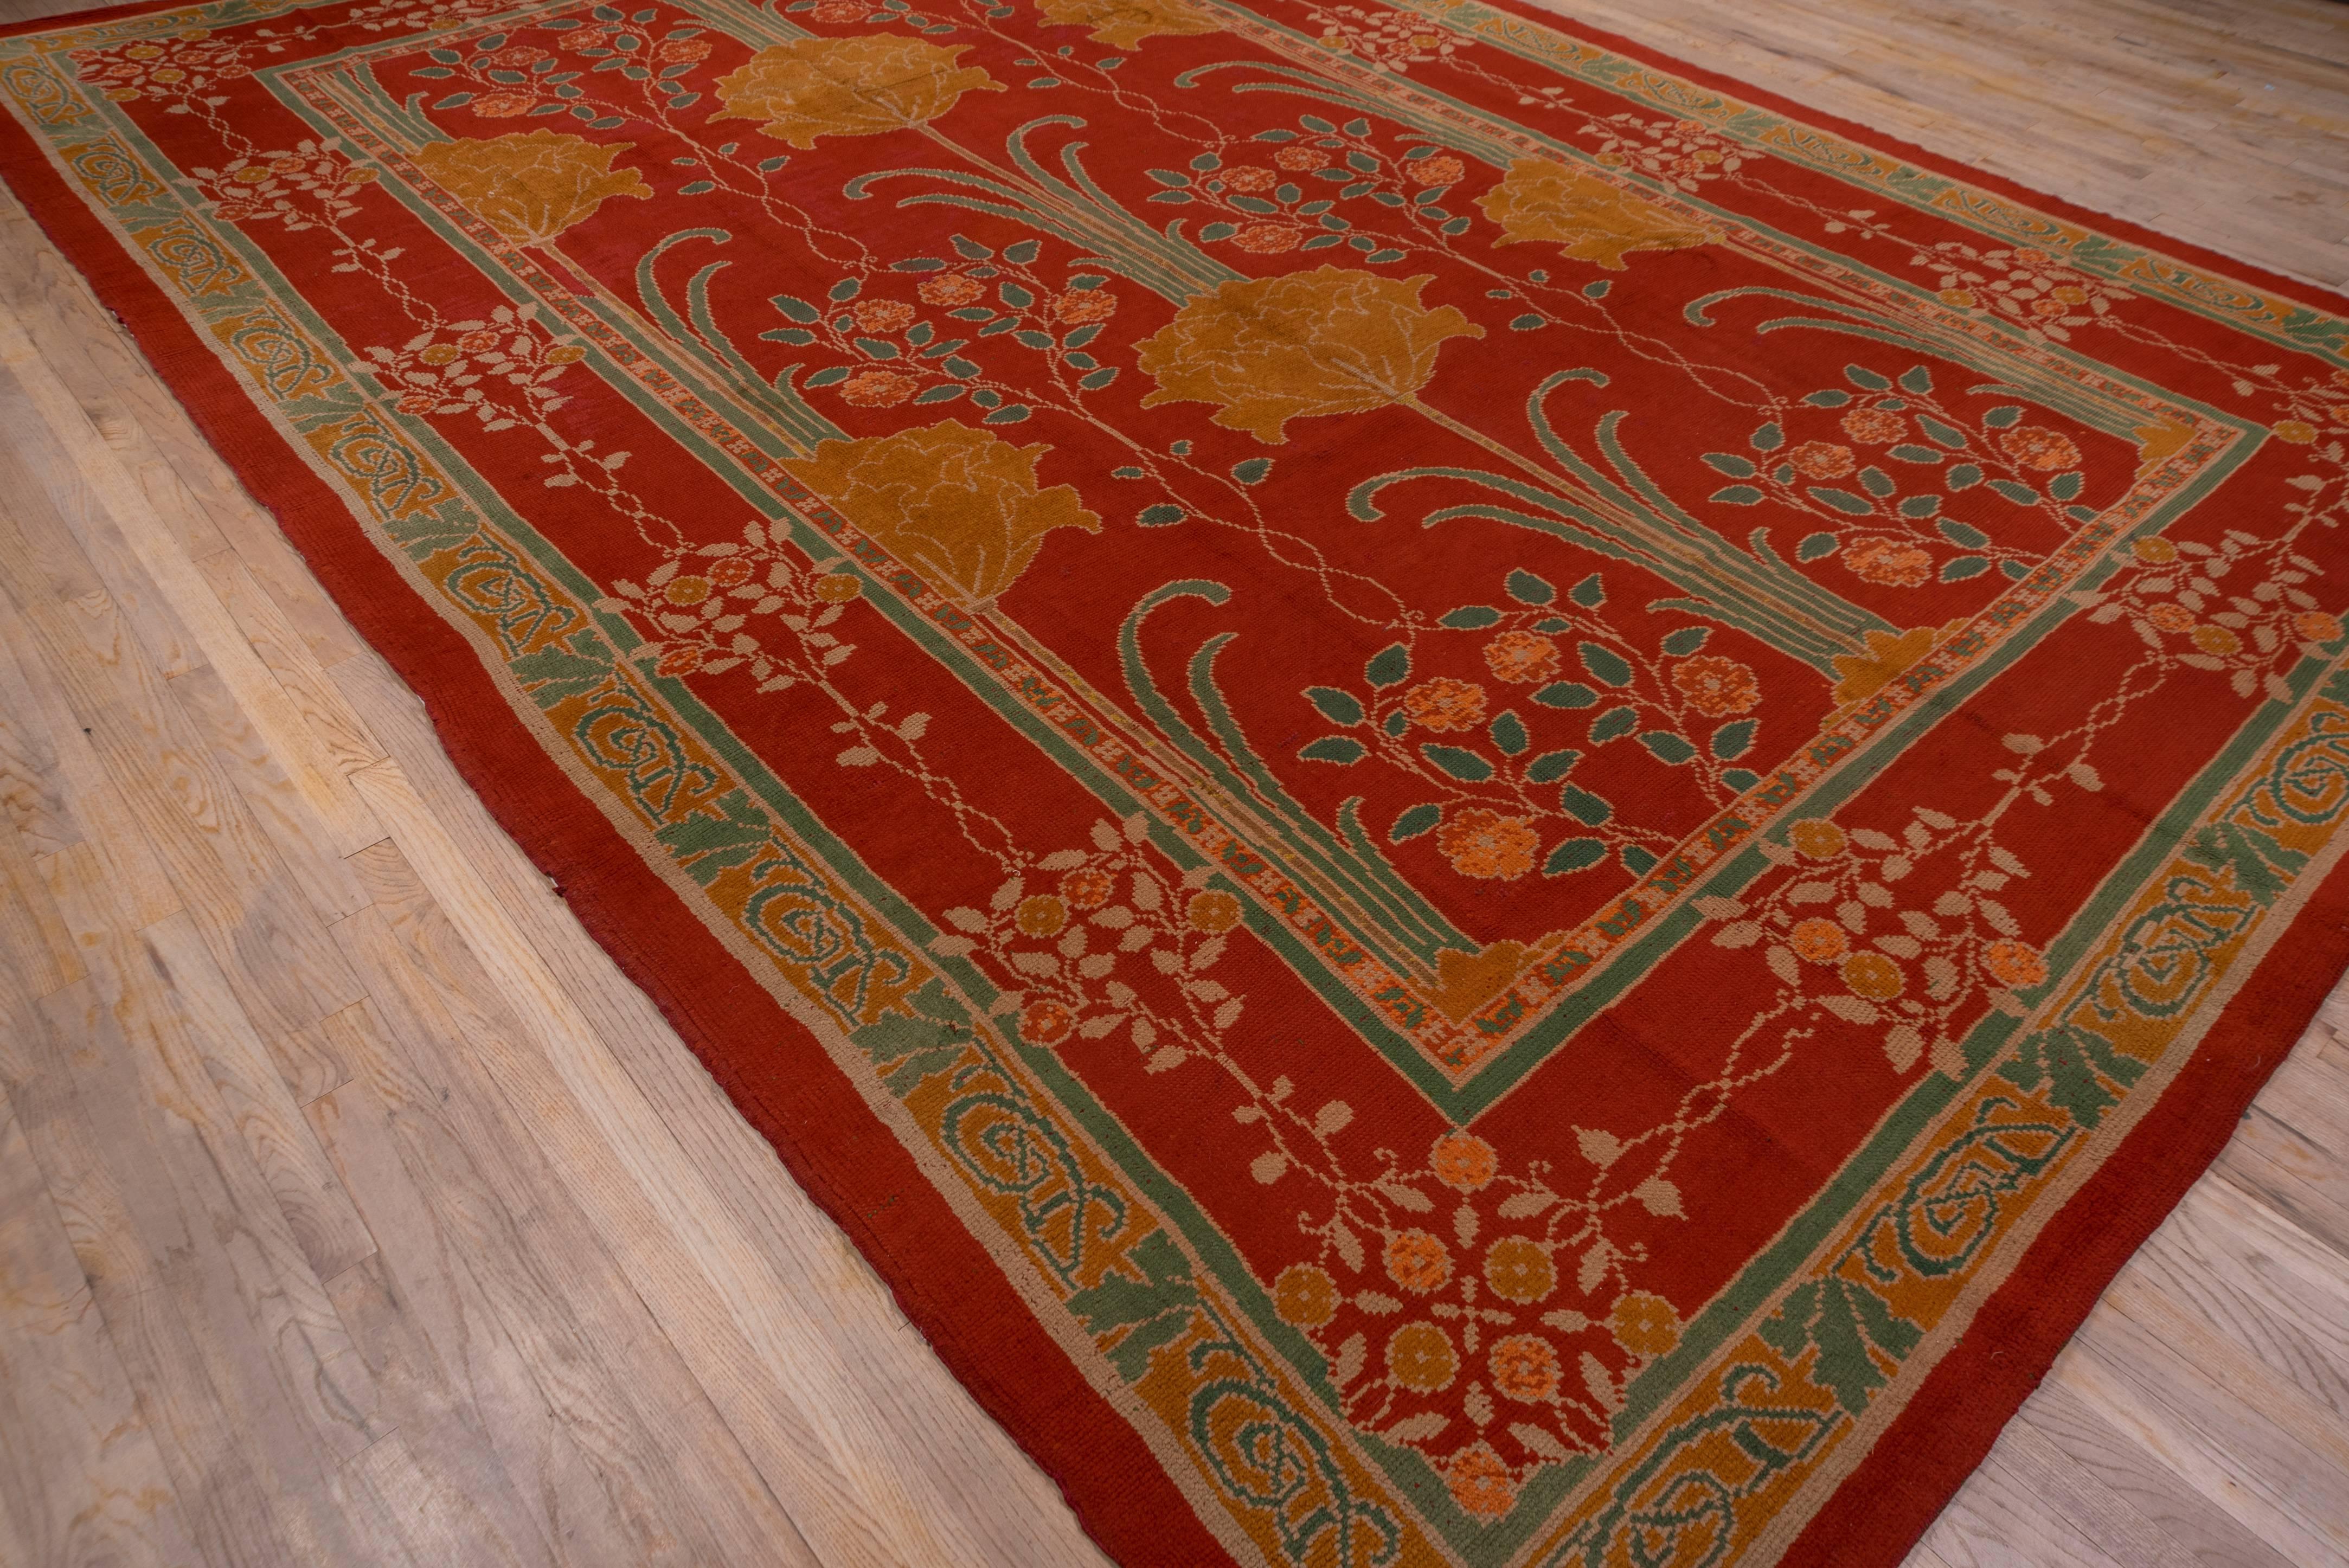 Wool Donegal Carpet, circa 1900